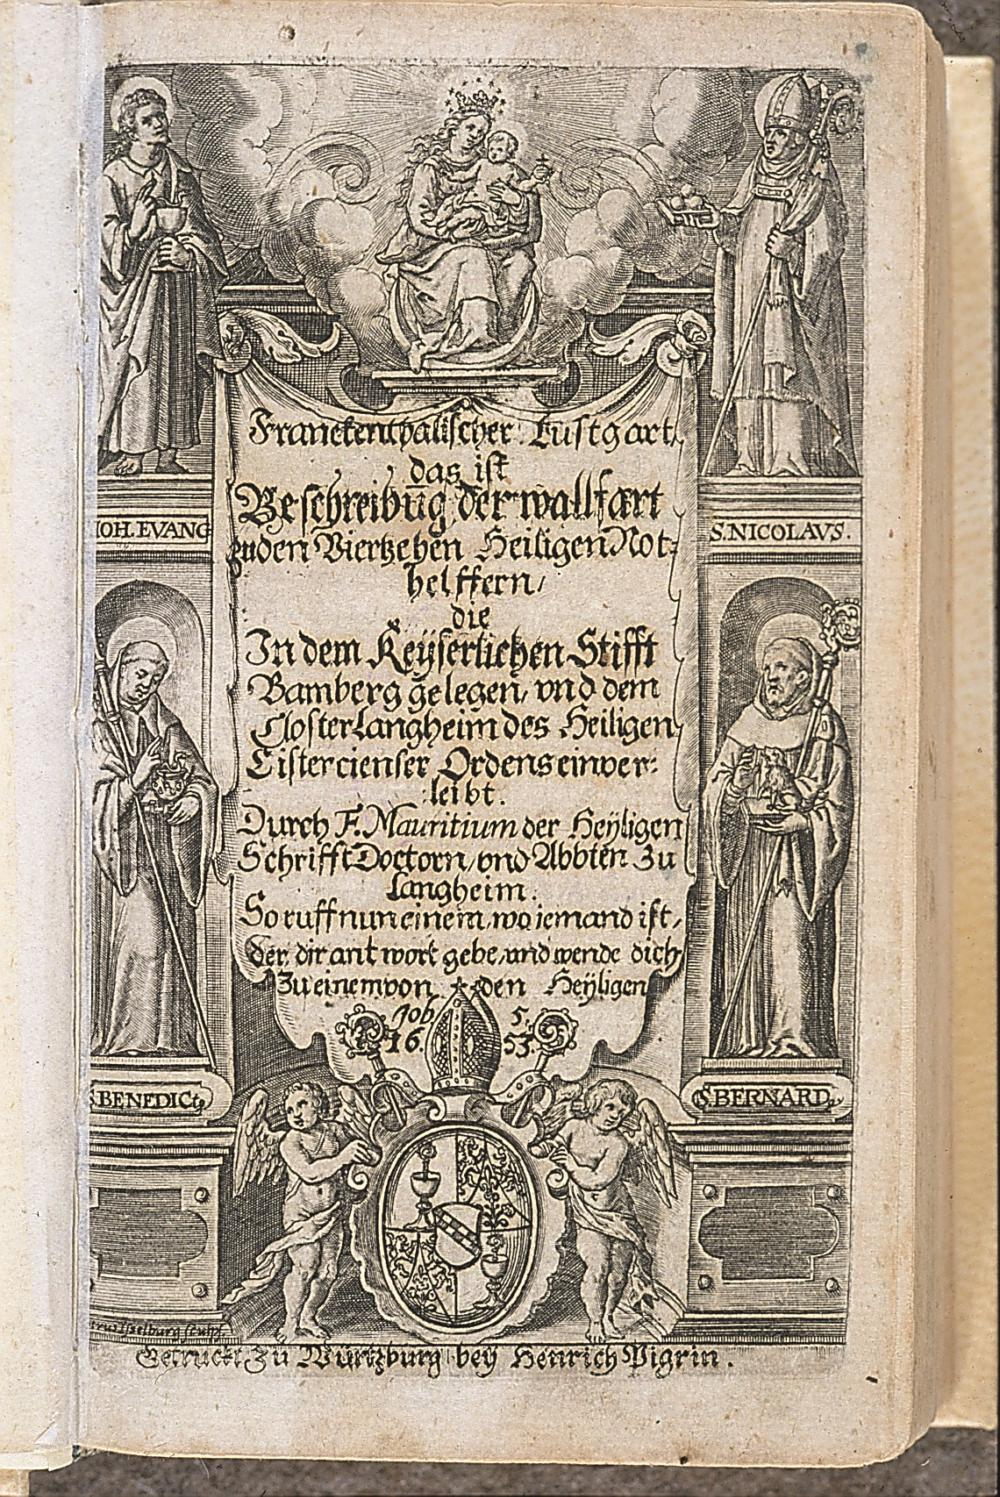 Abb. 6: Titelblatt des Vierzehnheiligener Wallfahrtsbuches „Franckenthalischer Lustgart“, verfasst von Abt Mauritius Knaur, erschienen 1653 in Würzburg.